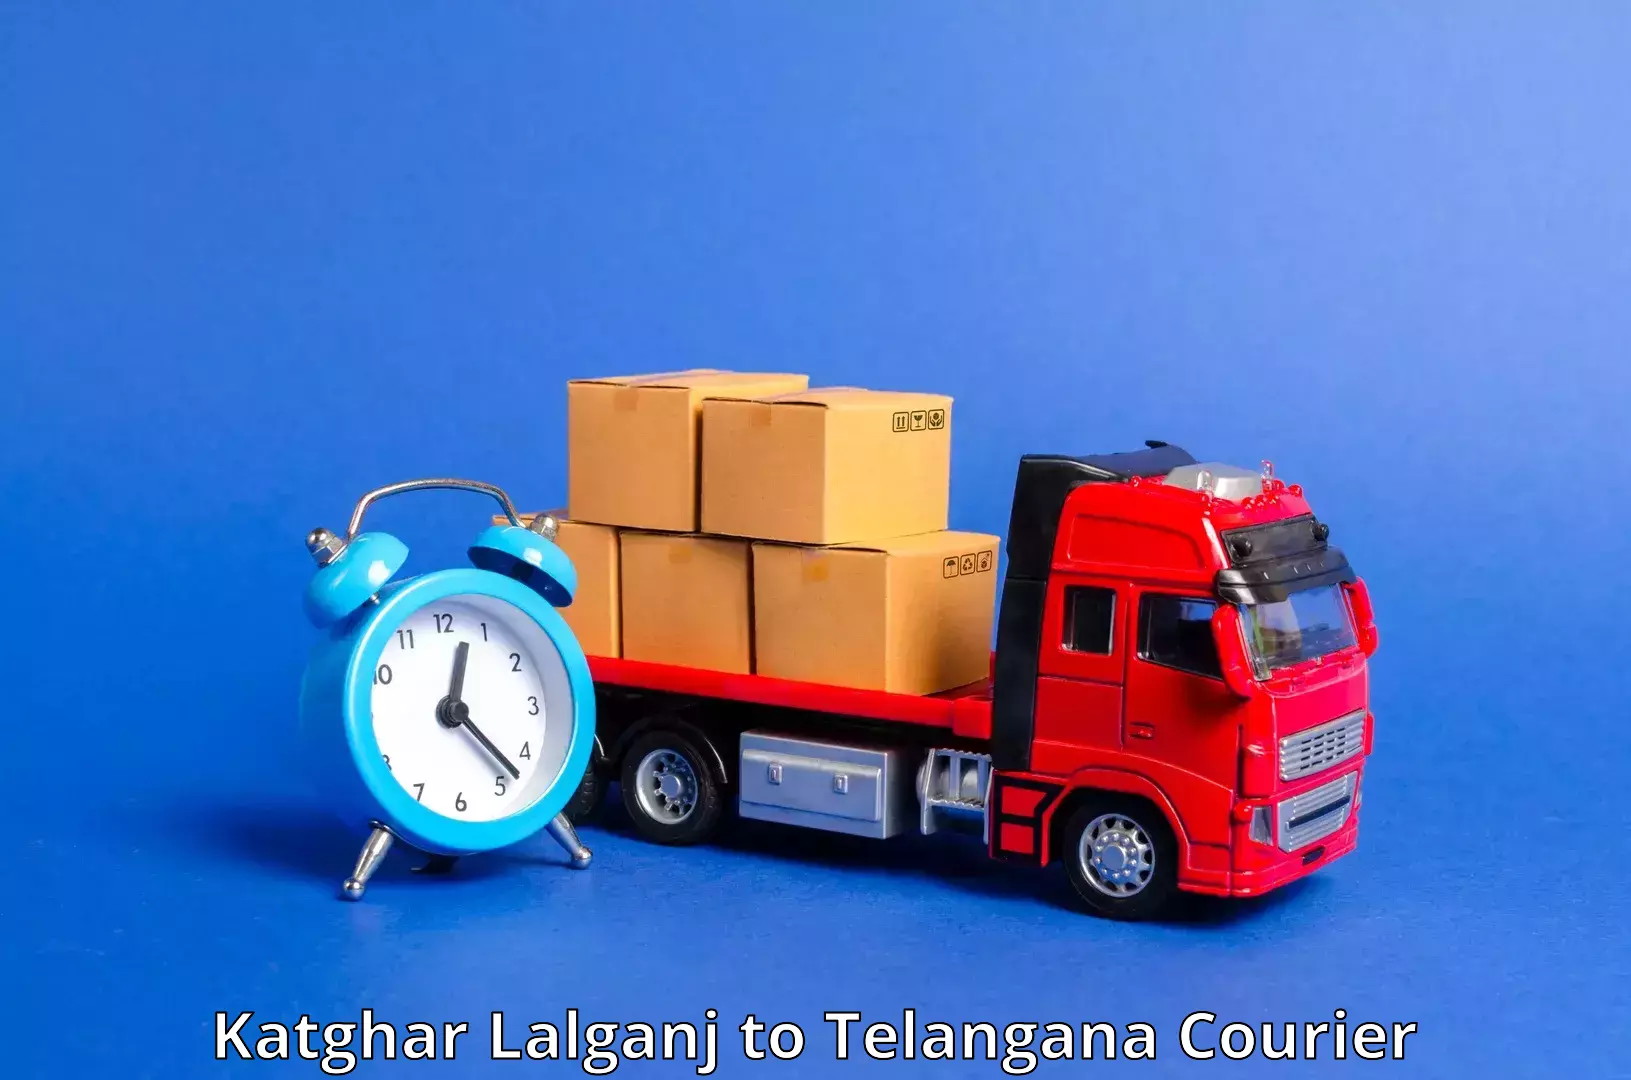 Express package handling Katghar Lalganj to Ibrahimpatnam